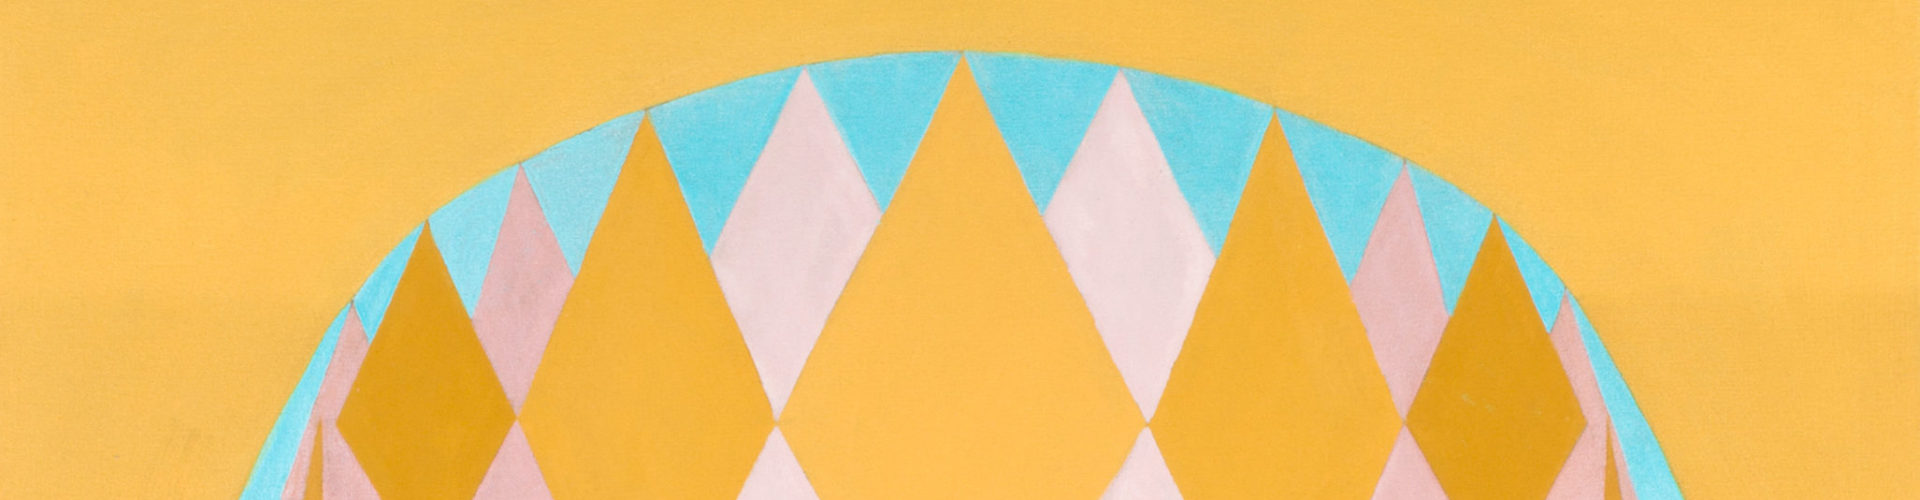 Schilderij van gekleurde ruitvormige vlakken in geel, roze en blauw, samen vormen zij een ovaal